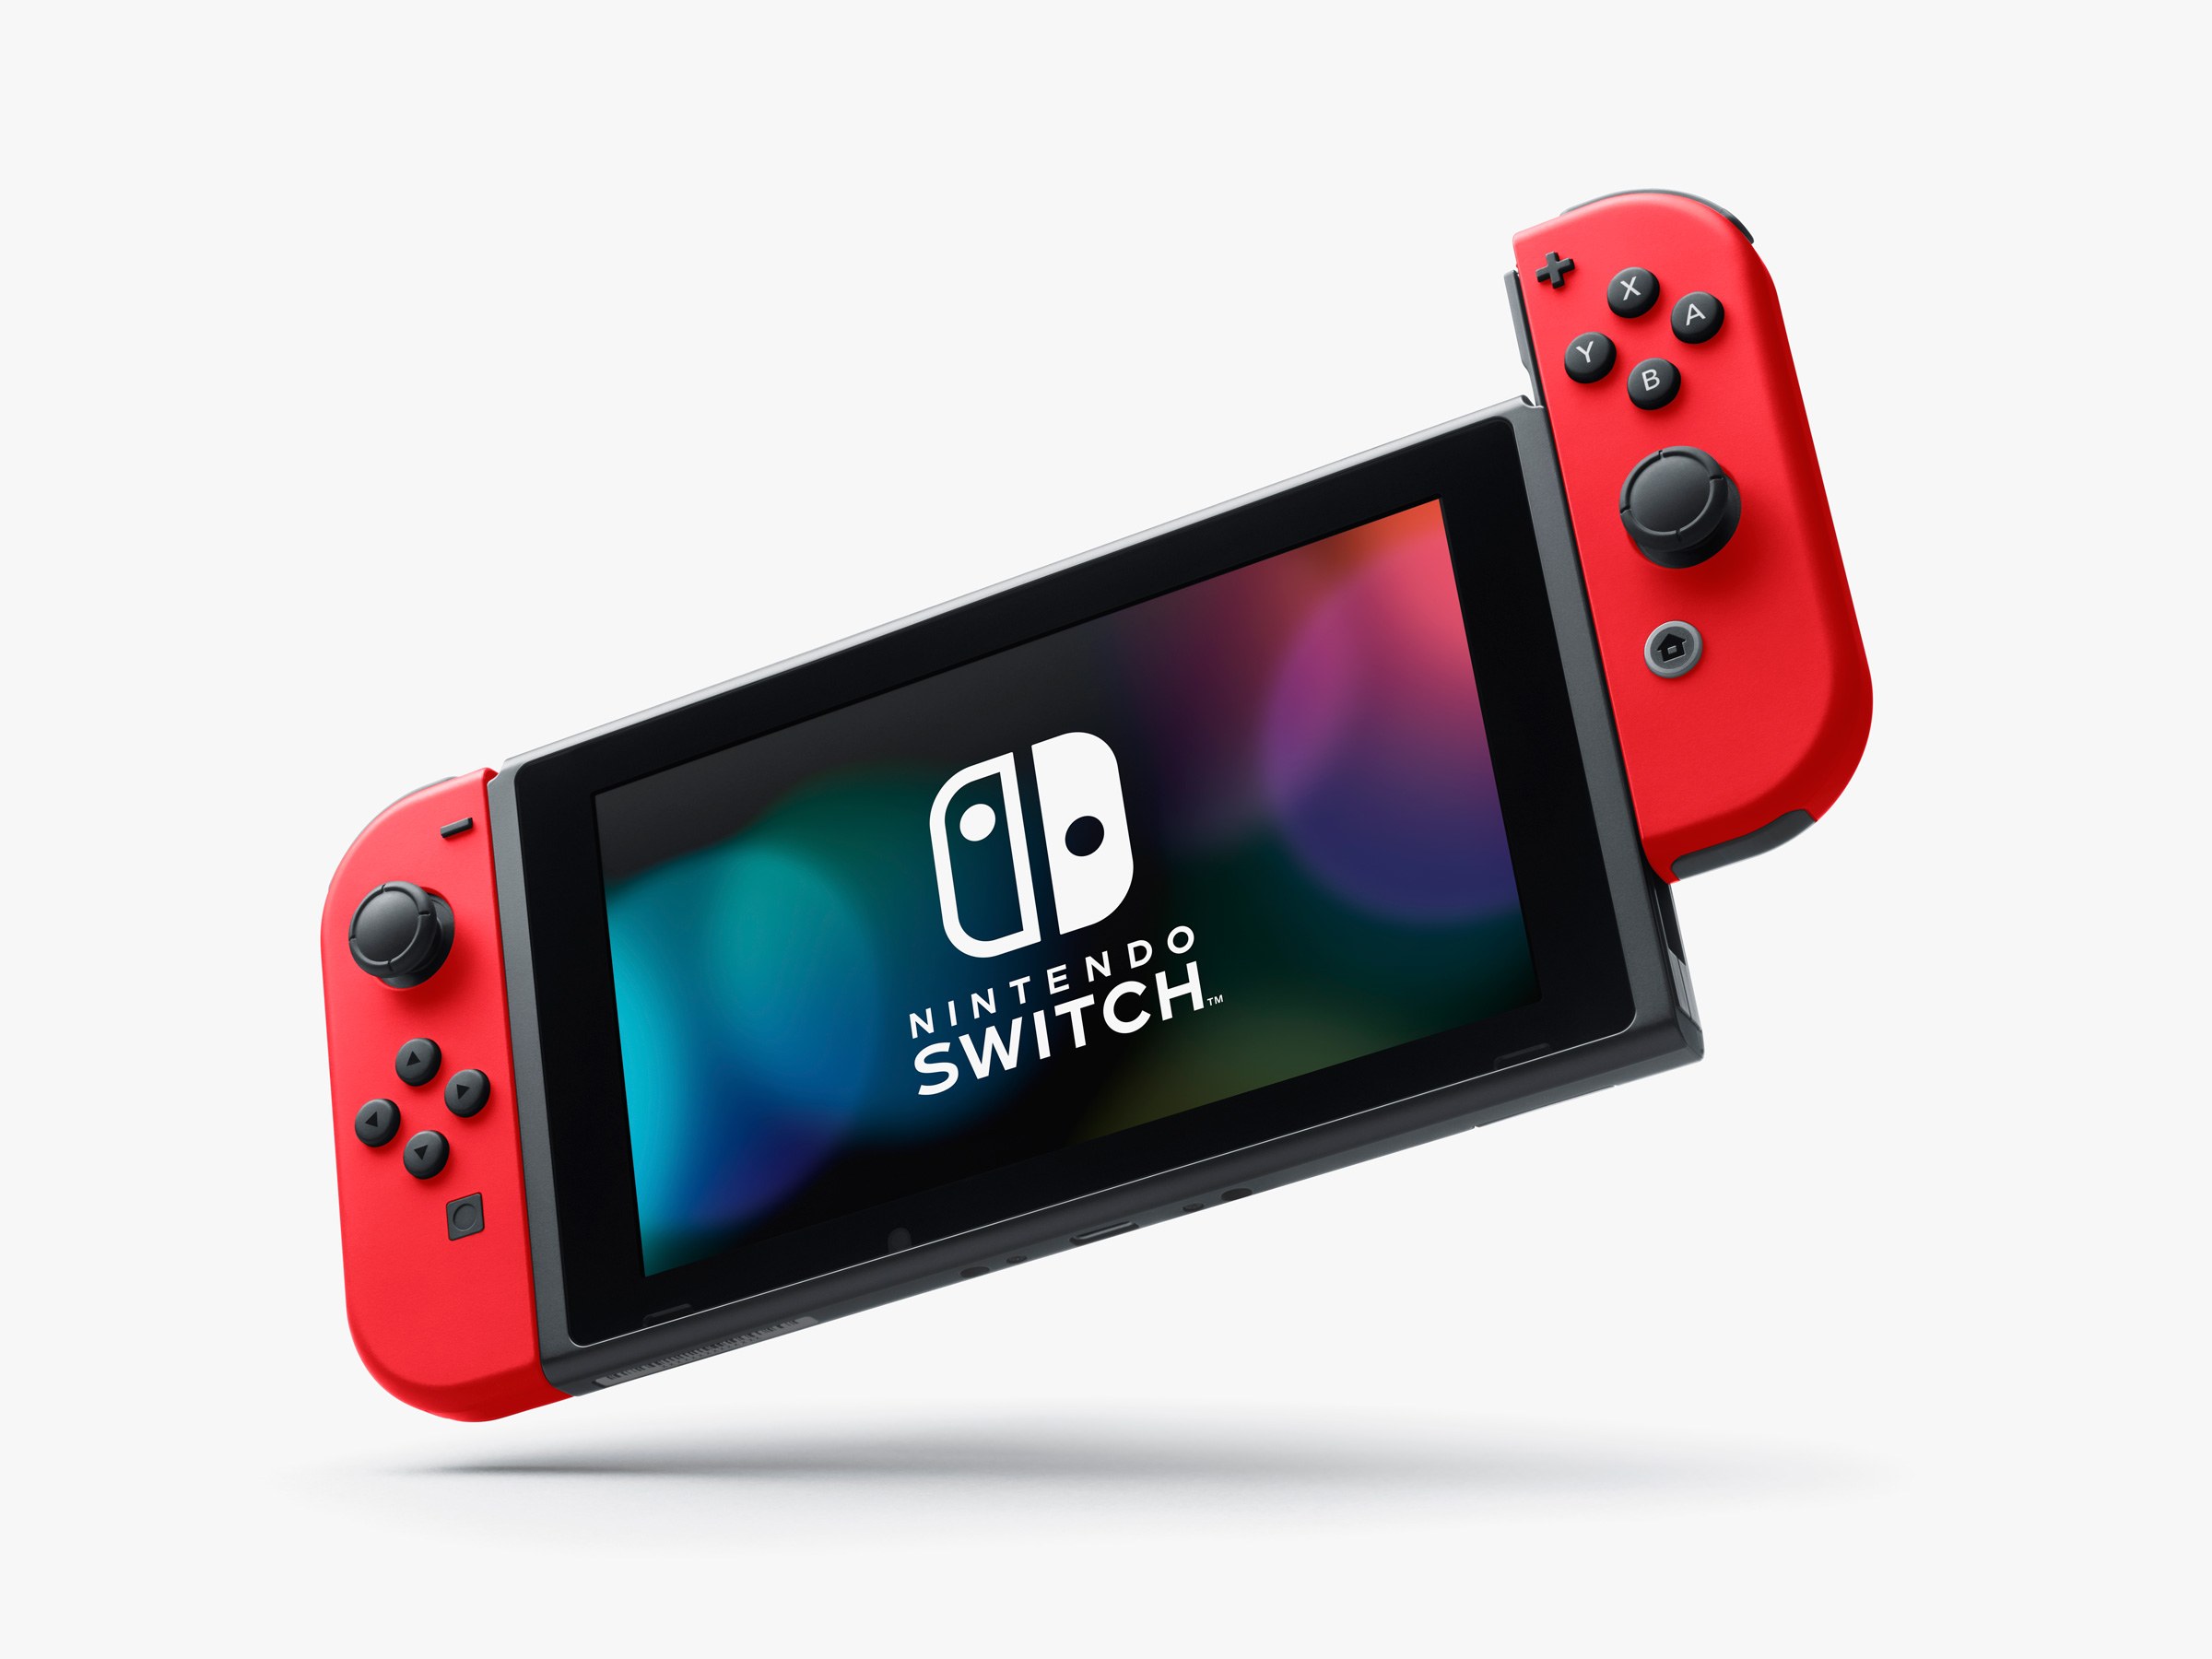 [ข่าวลือ] Nintendo Switch รุ่นใหม่ อาจมาไวกว่าที่คิด เล็กกว่า เน้นพกพา มีแววมาในปีนี้